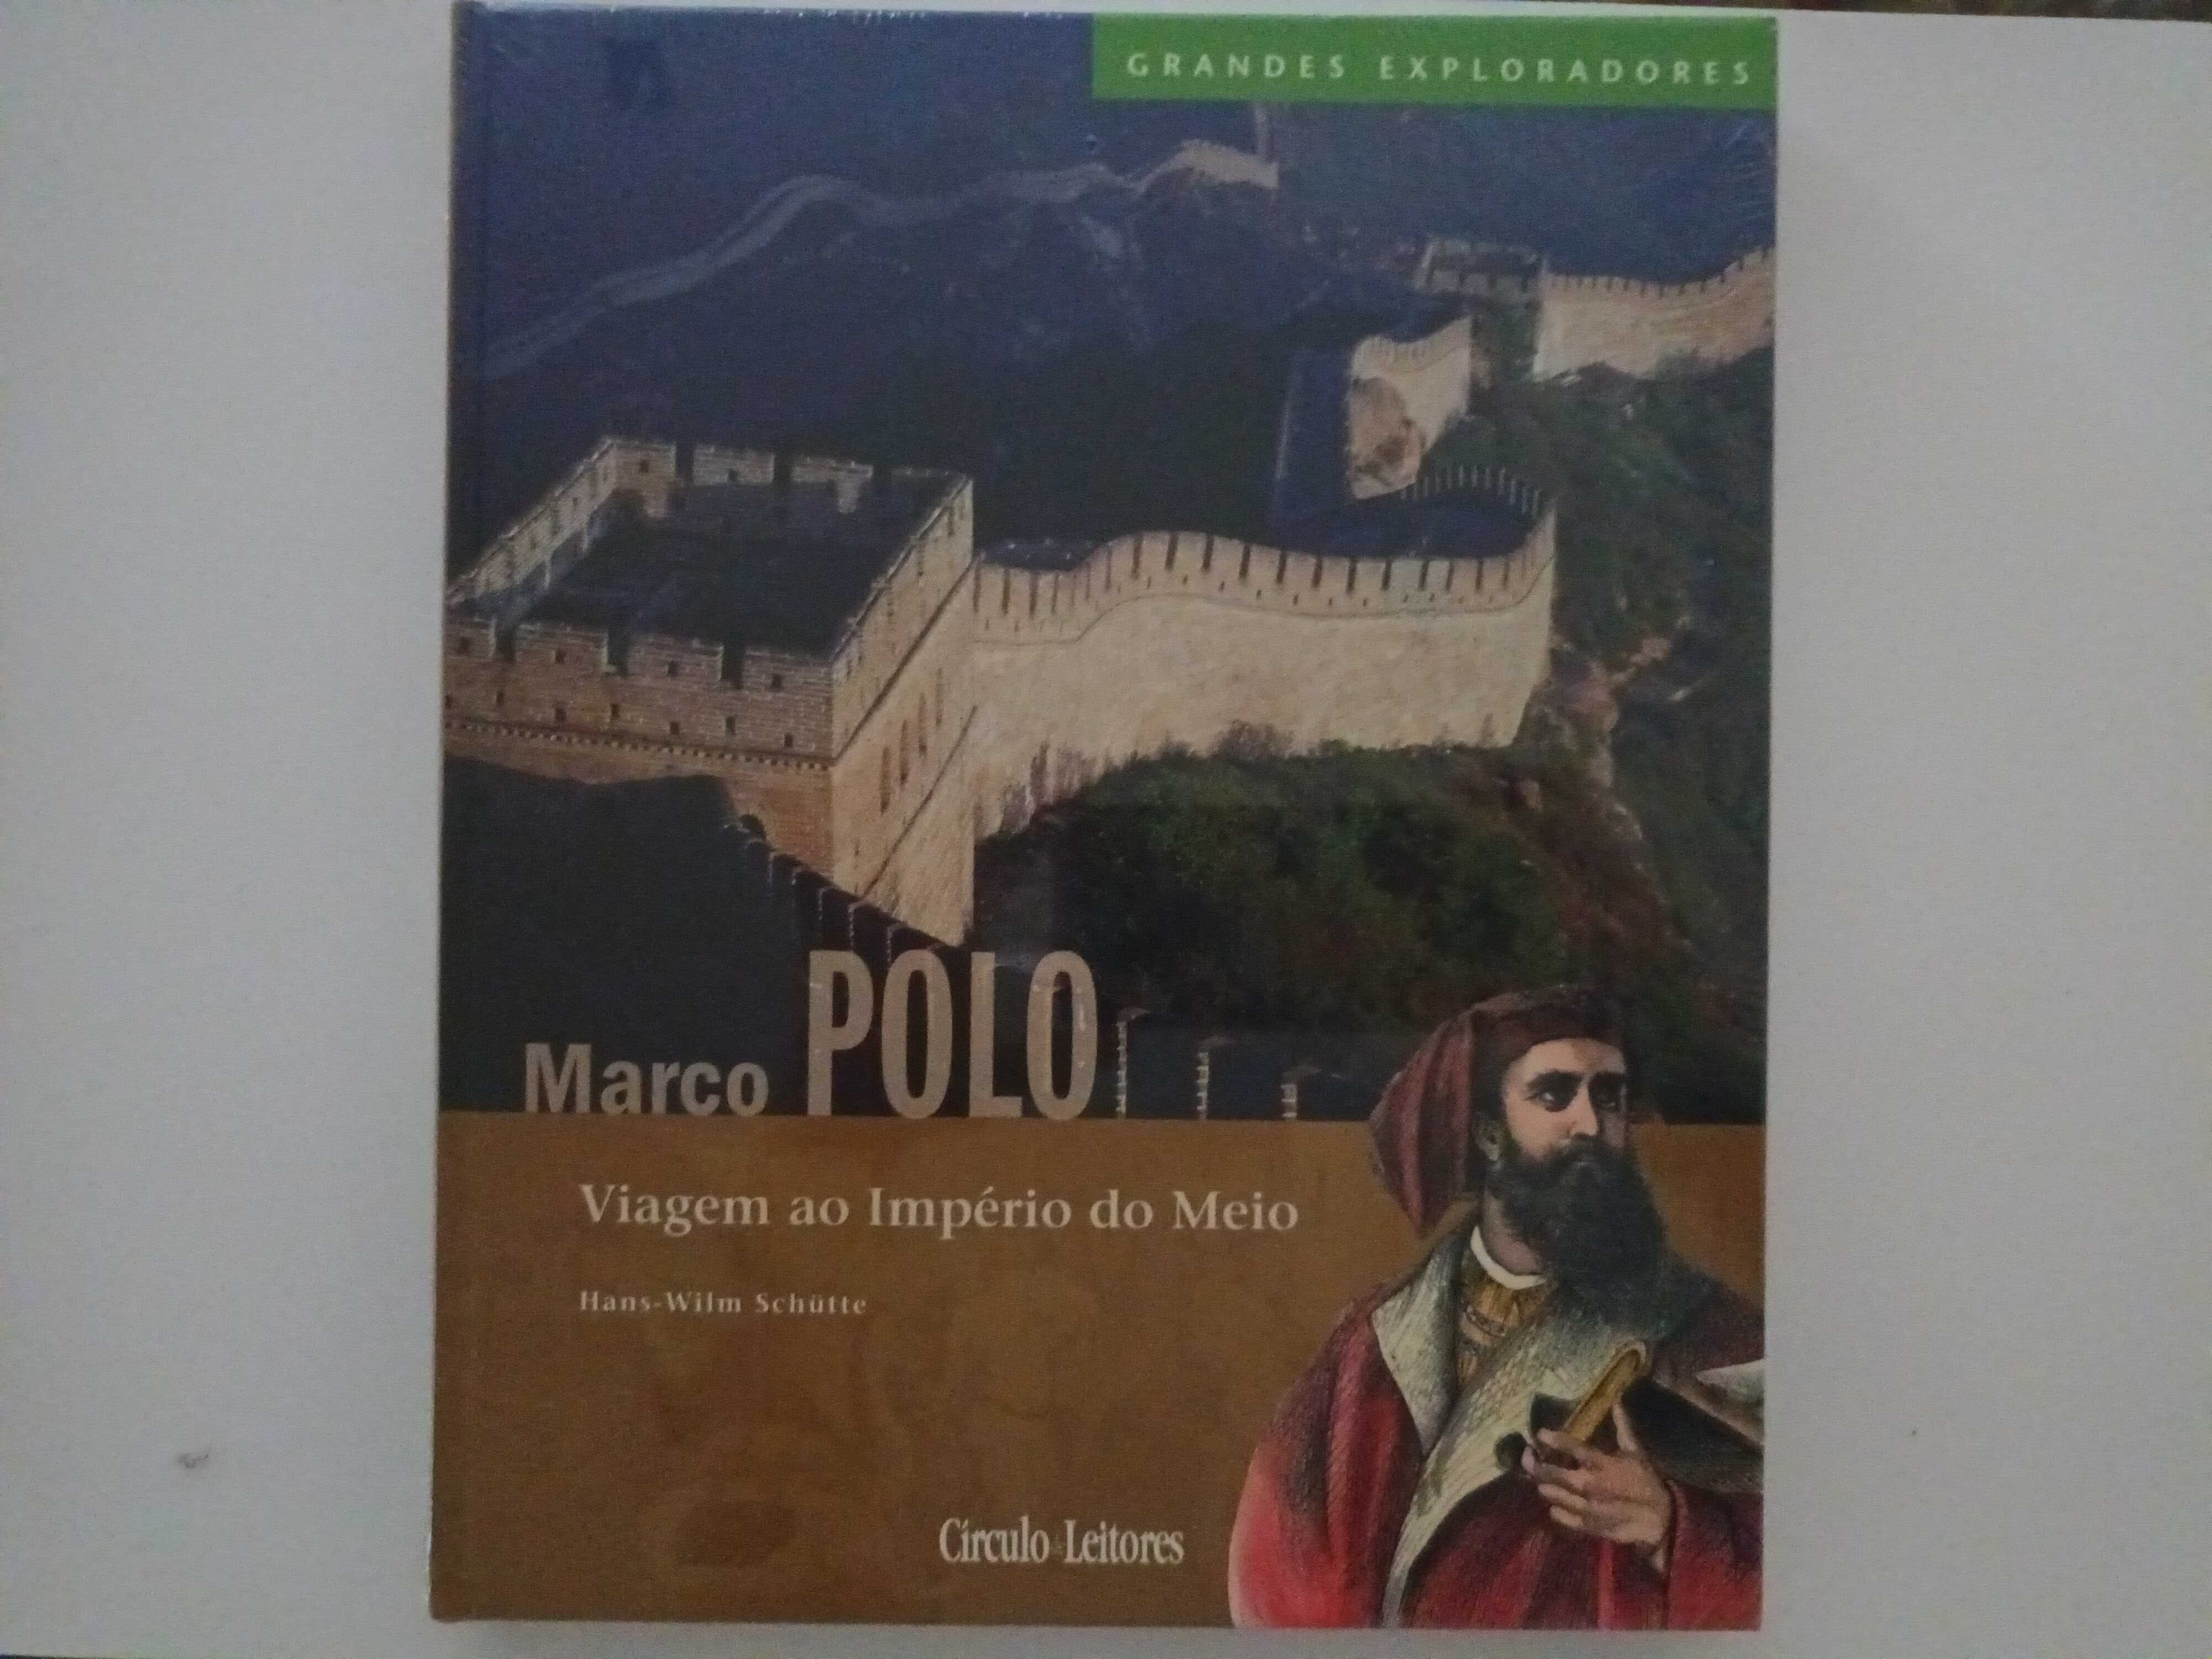 Grandes Exploradores - Marco POLO - Viagem ao Império do Meio